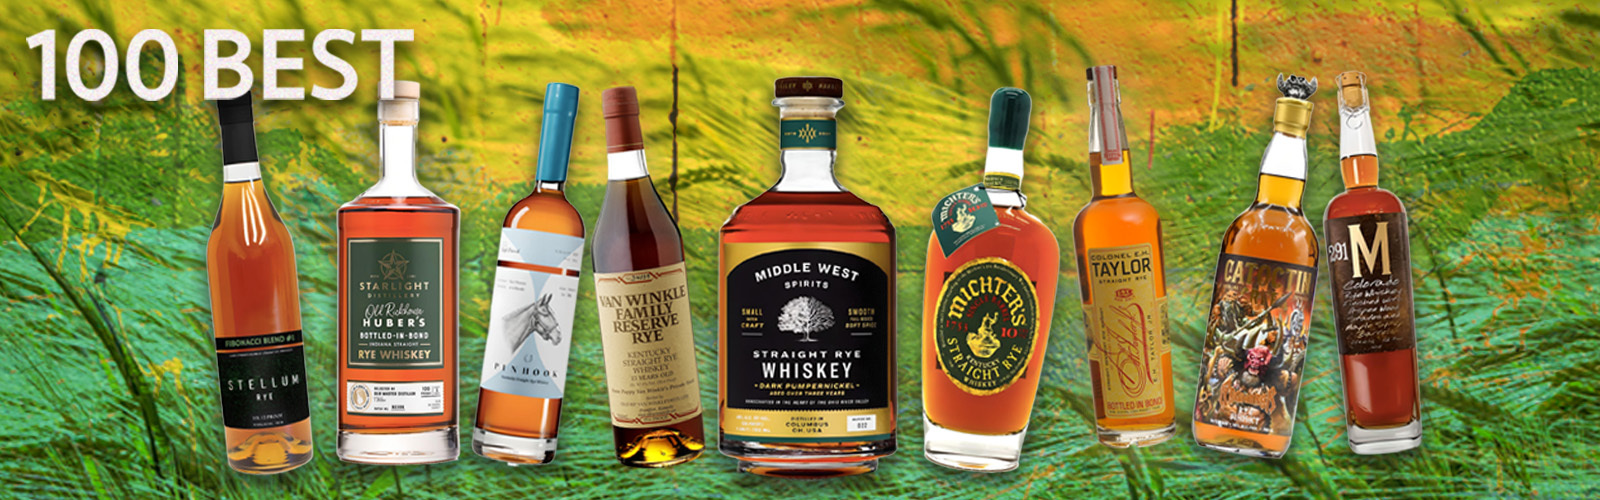 100 Best Rye Whiskeys